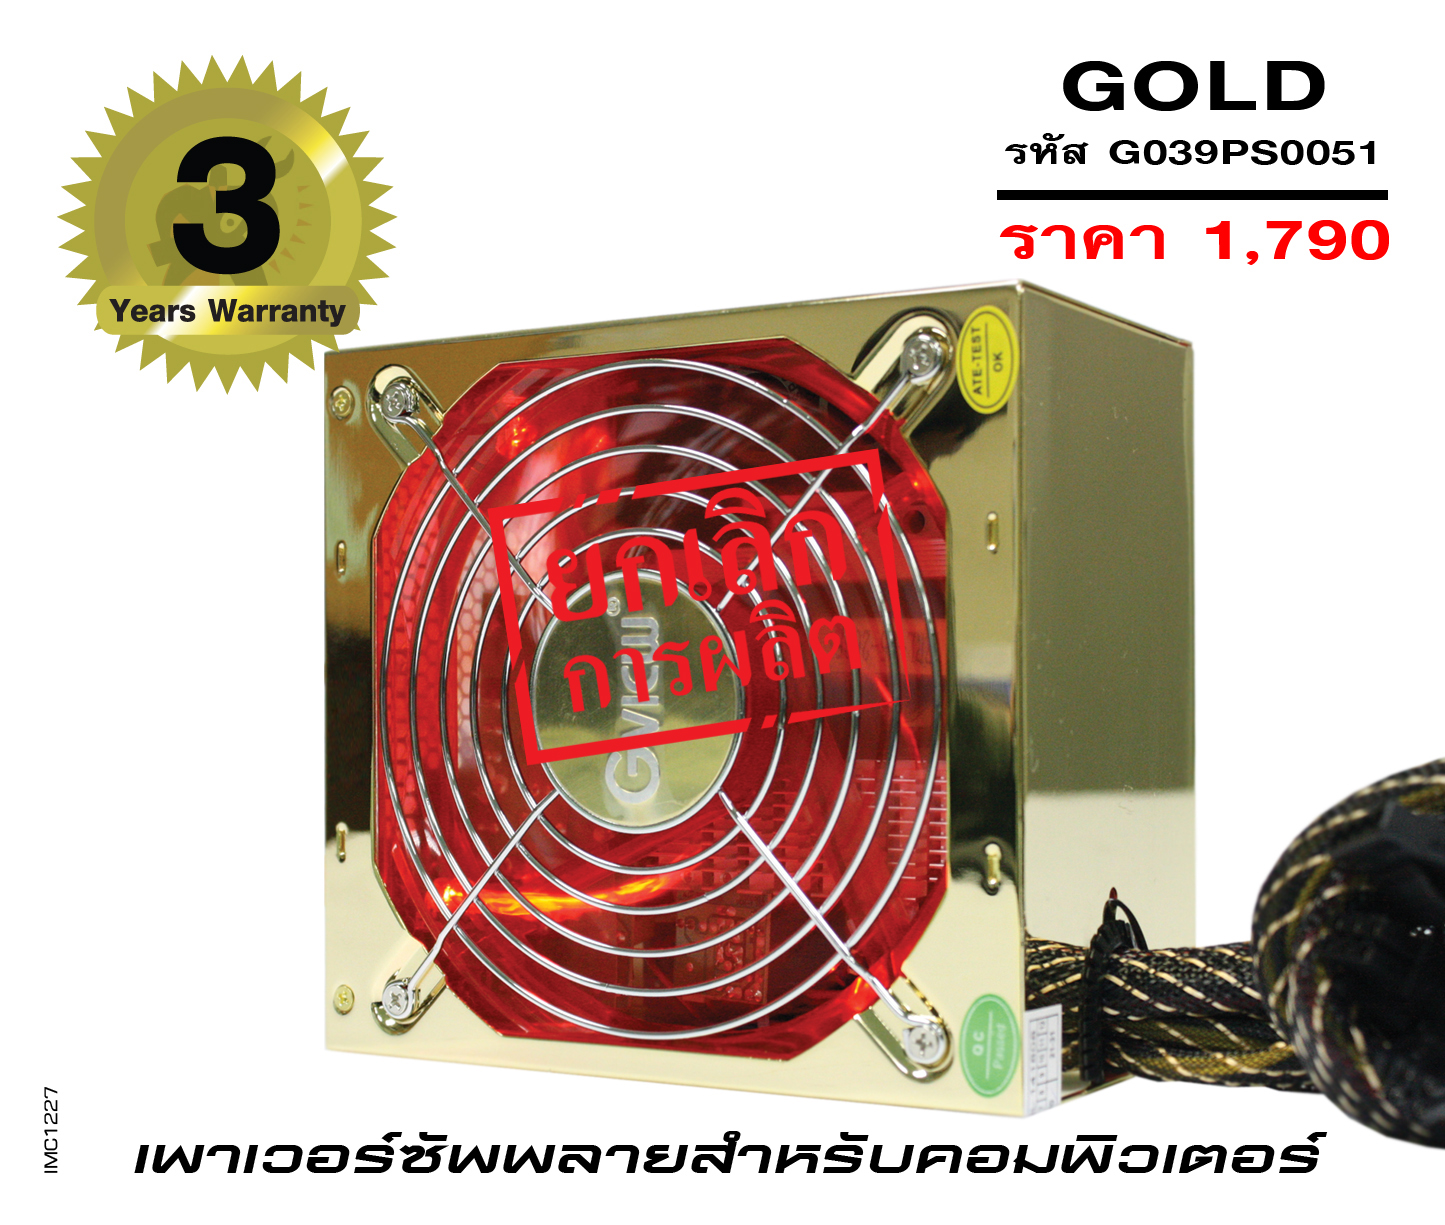 รุ่น GOLD 550 (รหัส G039PS0051)